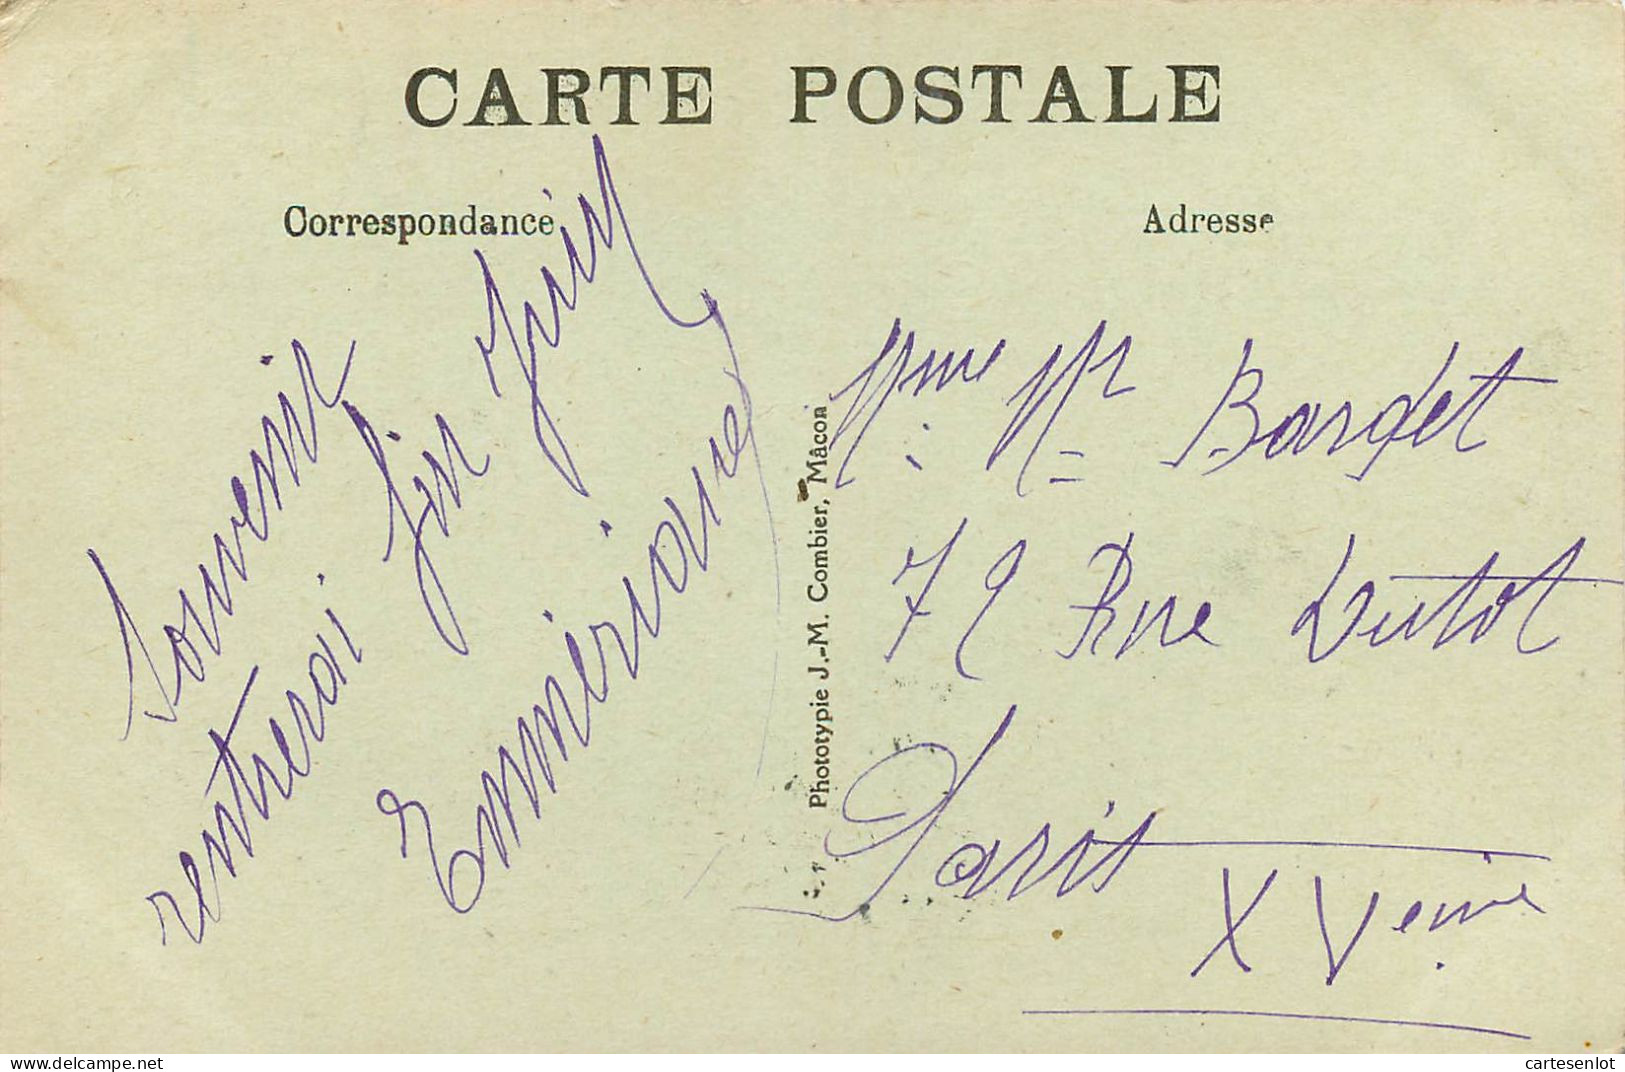 lot de 31 cartes postale France correspondance même famille